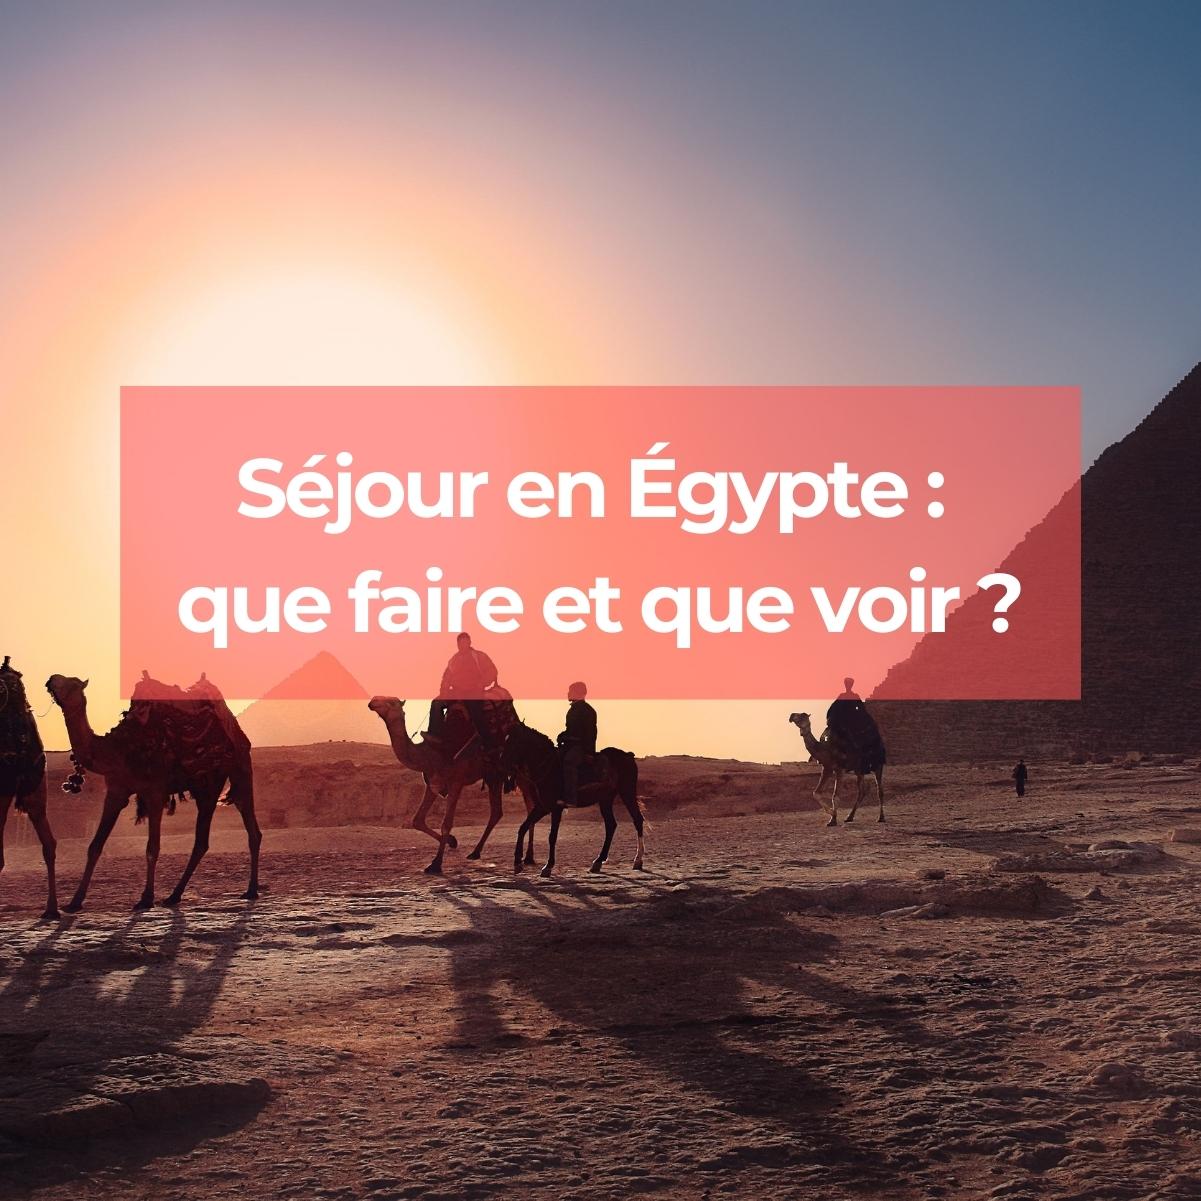 Préparez votre séjour en Egypte : Monuments et visites incontournables, découvertes, météo...